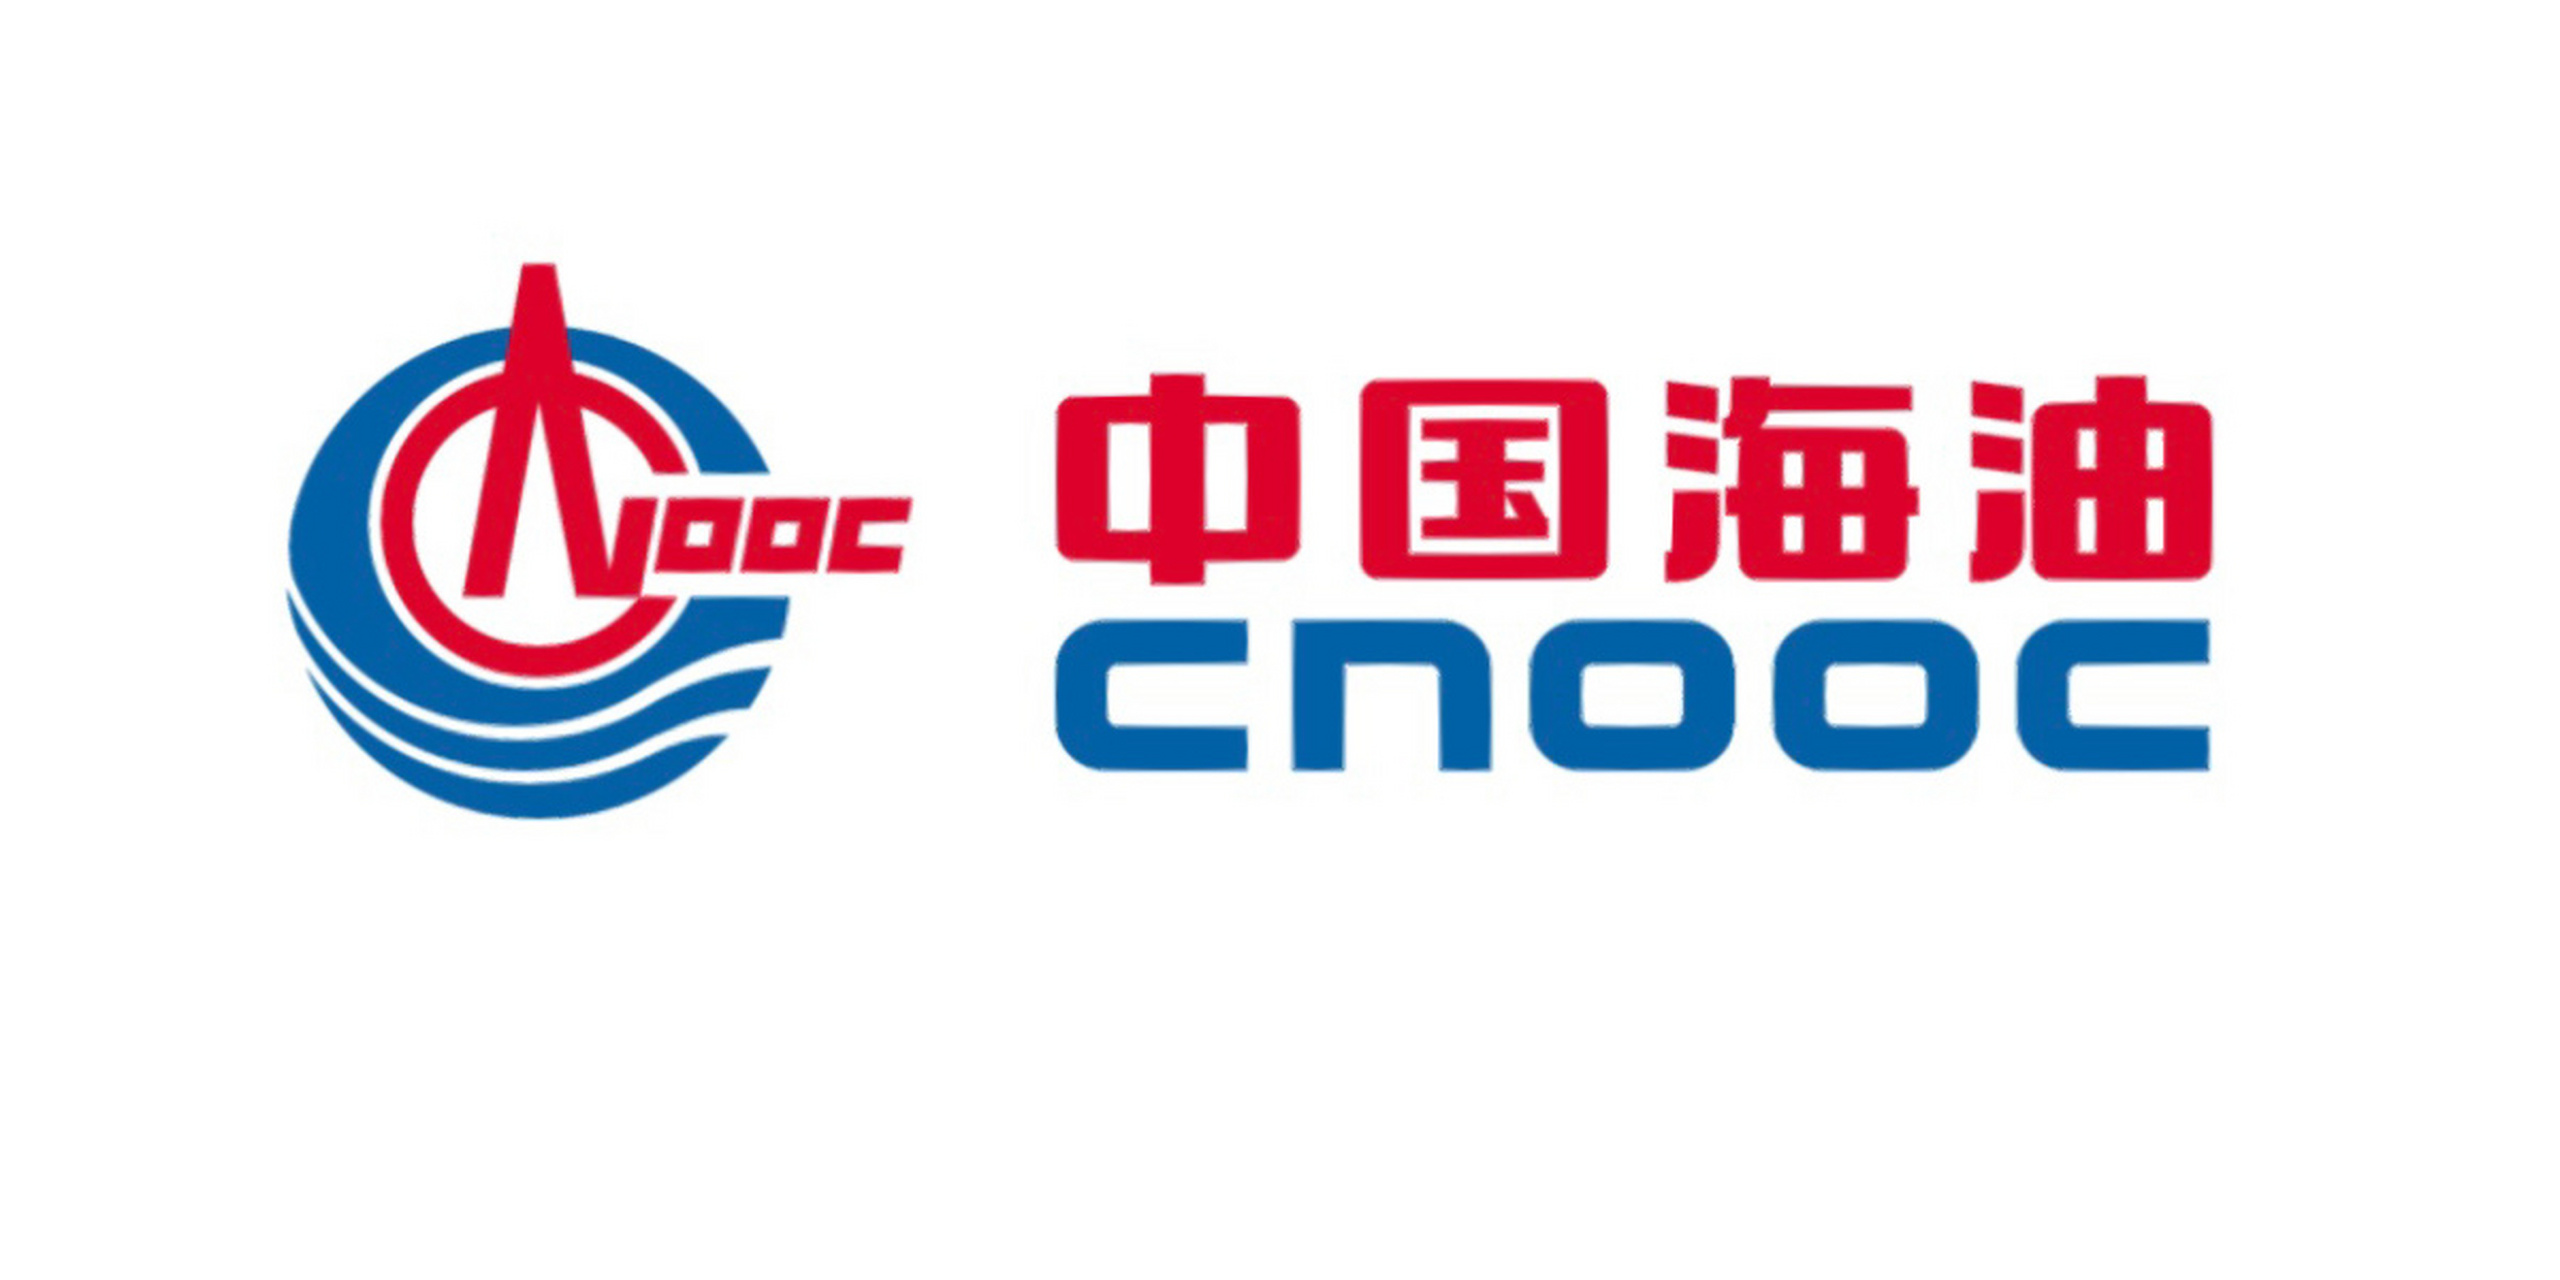 中海油logo高清图片